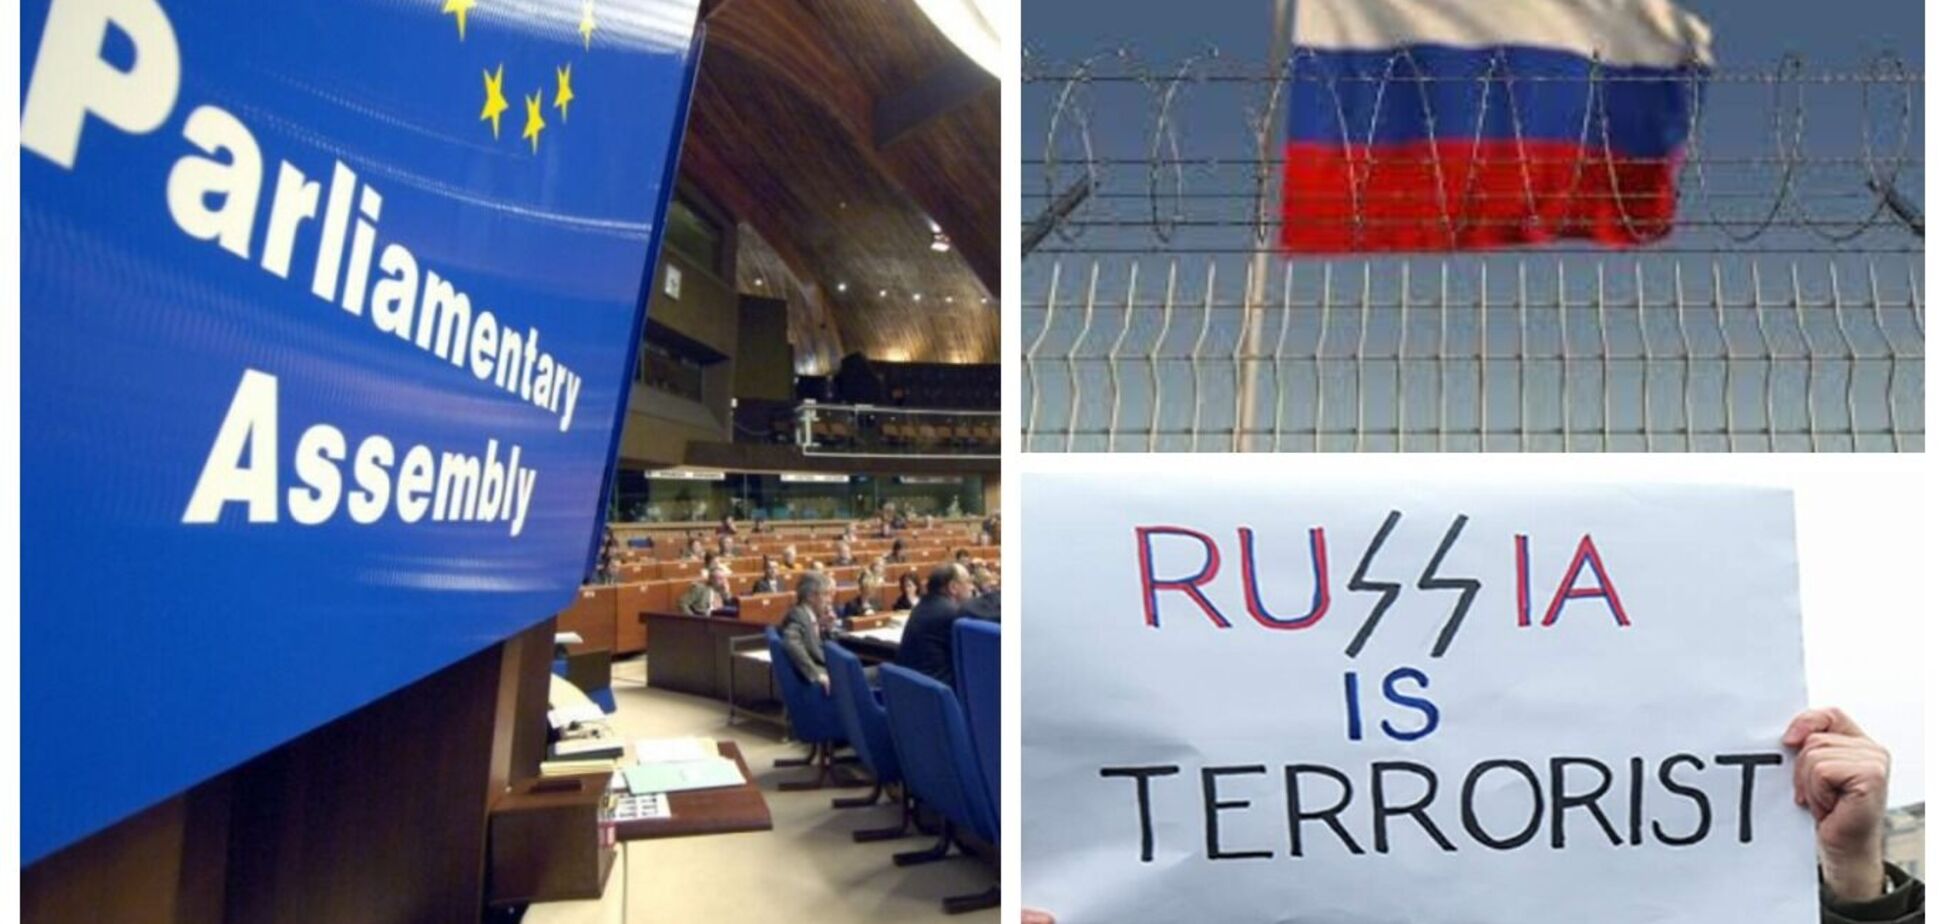 ПАСЕ приняла резолюцию по Украине, которая признает российский режим террористическим и предусматривает создание трибунала